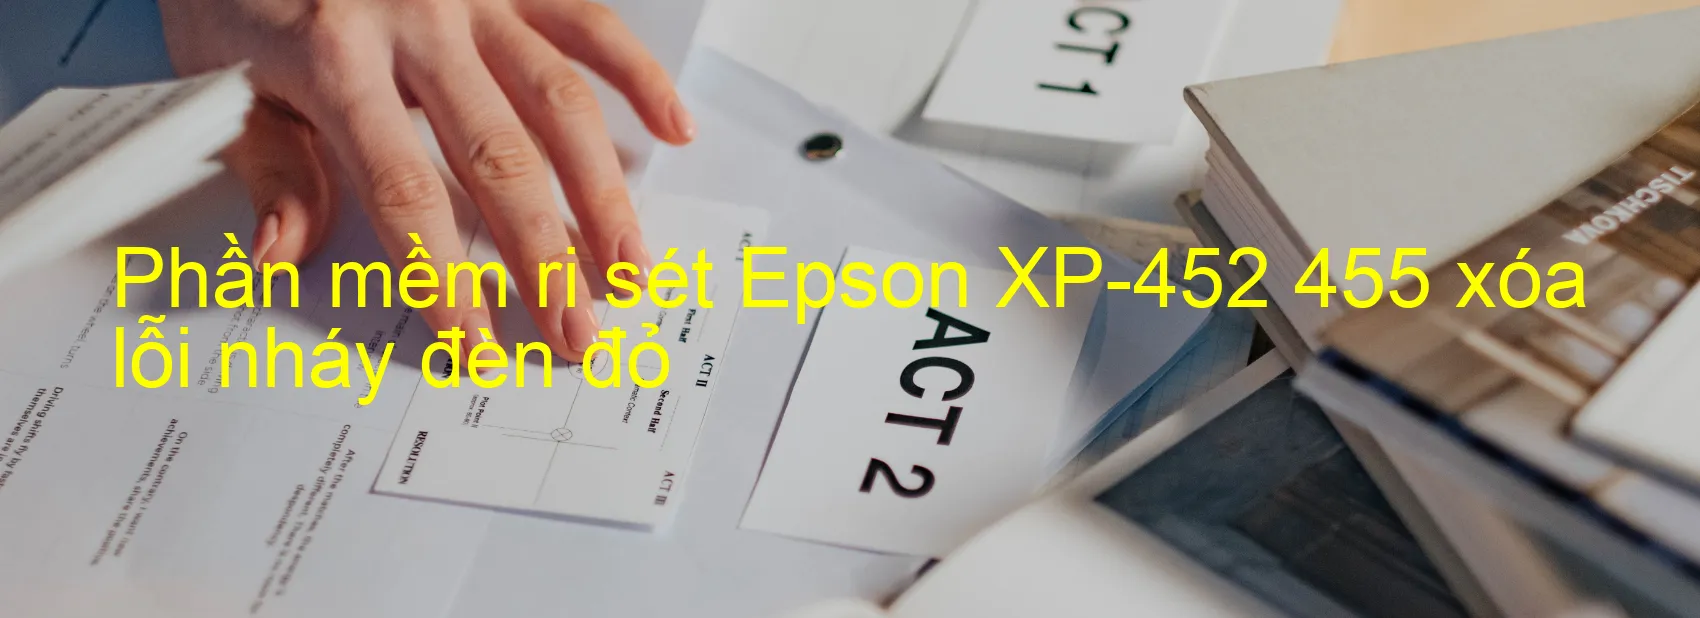 Phần mềm reset Epson XP-452 455 xóa lỗi nháy đèn đỏ